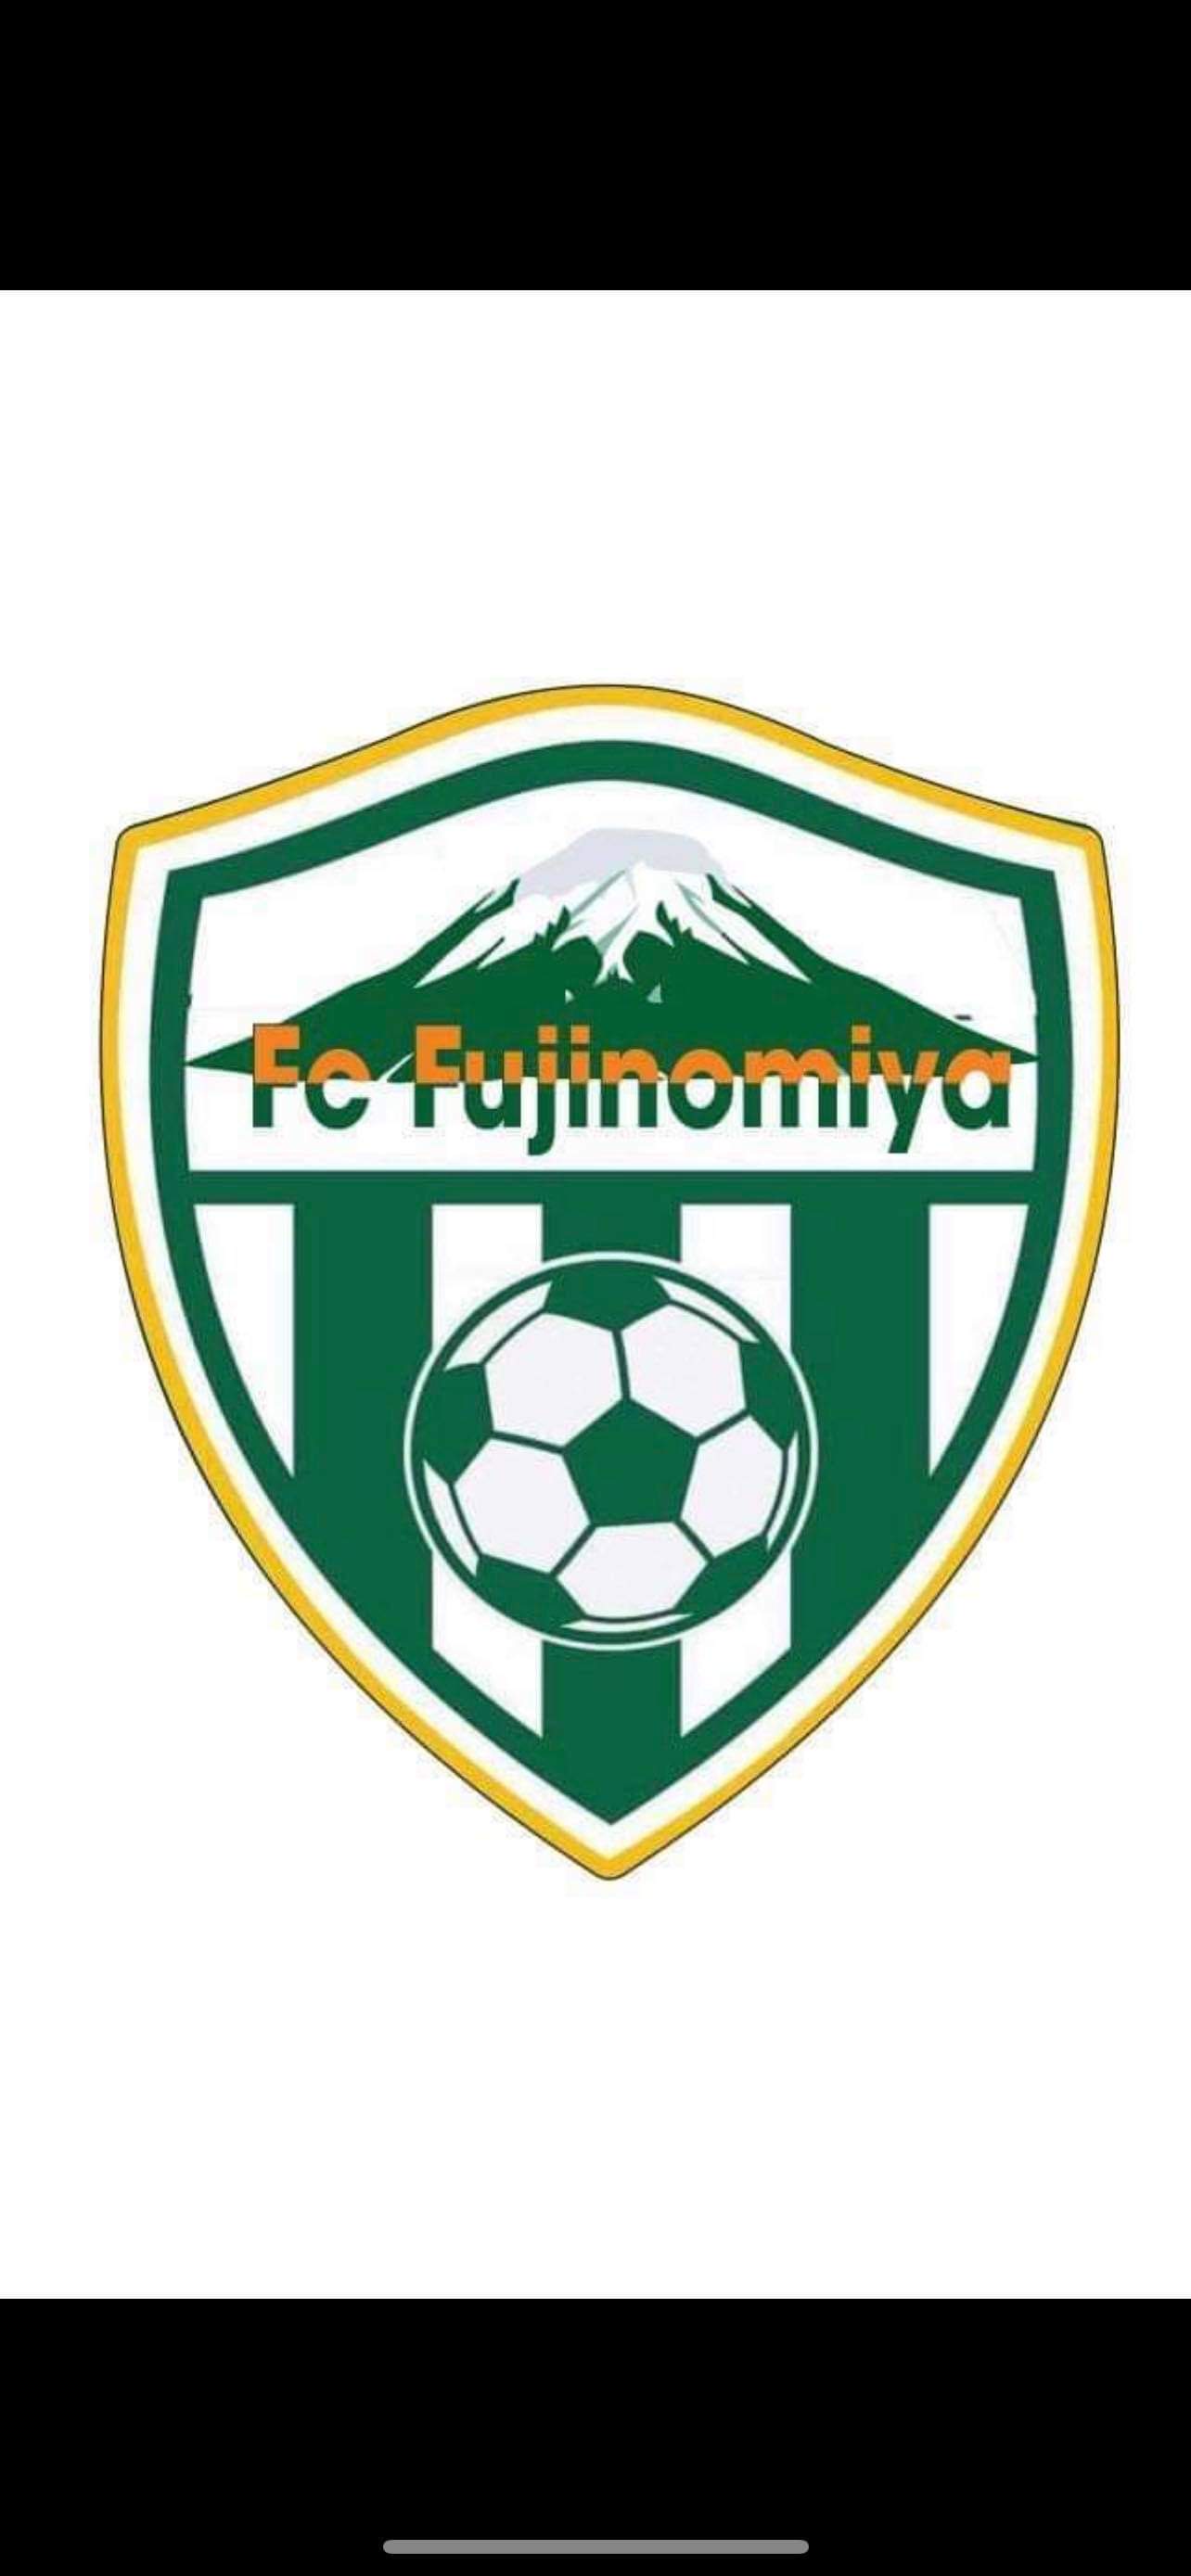 FUJI NOMIYA FC